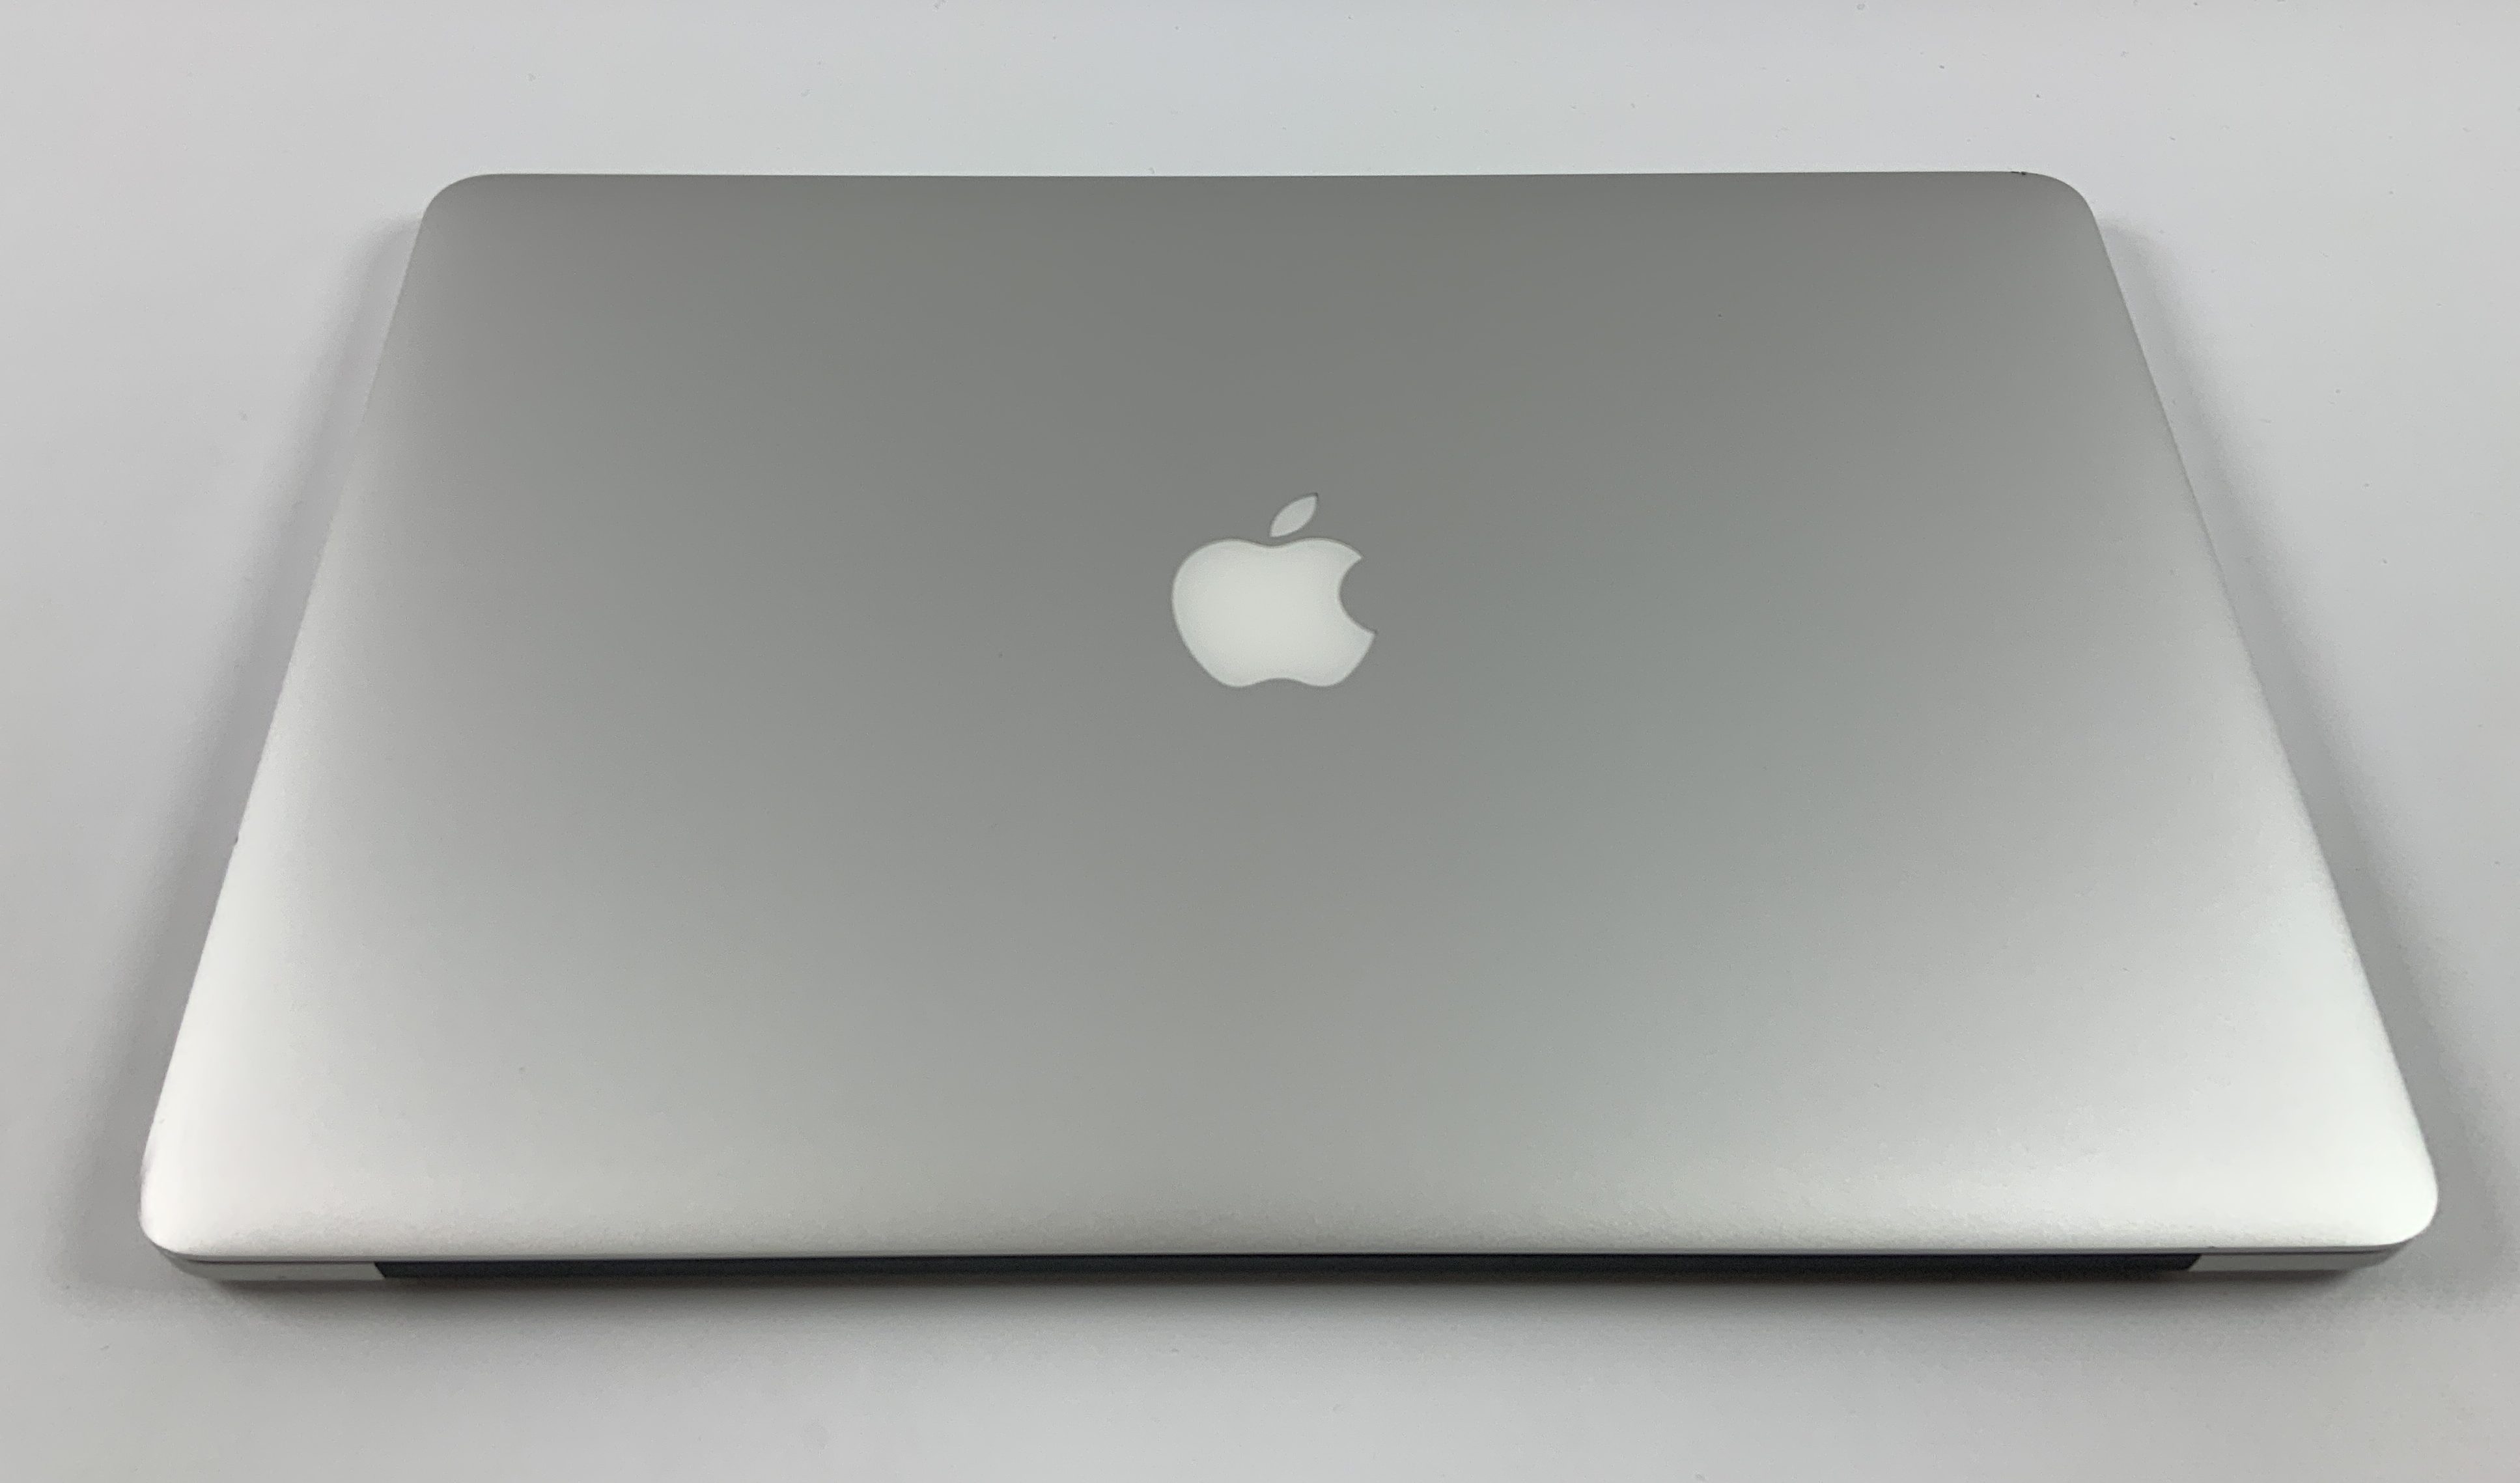 MacBook Pro Retina 15" Mid 2015 (Intel Quad-Core i7 2.2 GHz 16 GB RAM 256 GB SSD), Intel Quad-Core i7 2.2 GHz, 16 GB RAM, 256 GB SSD, obraz 2